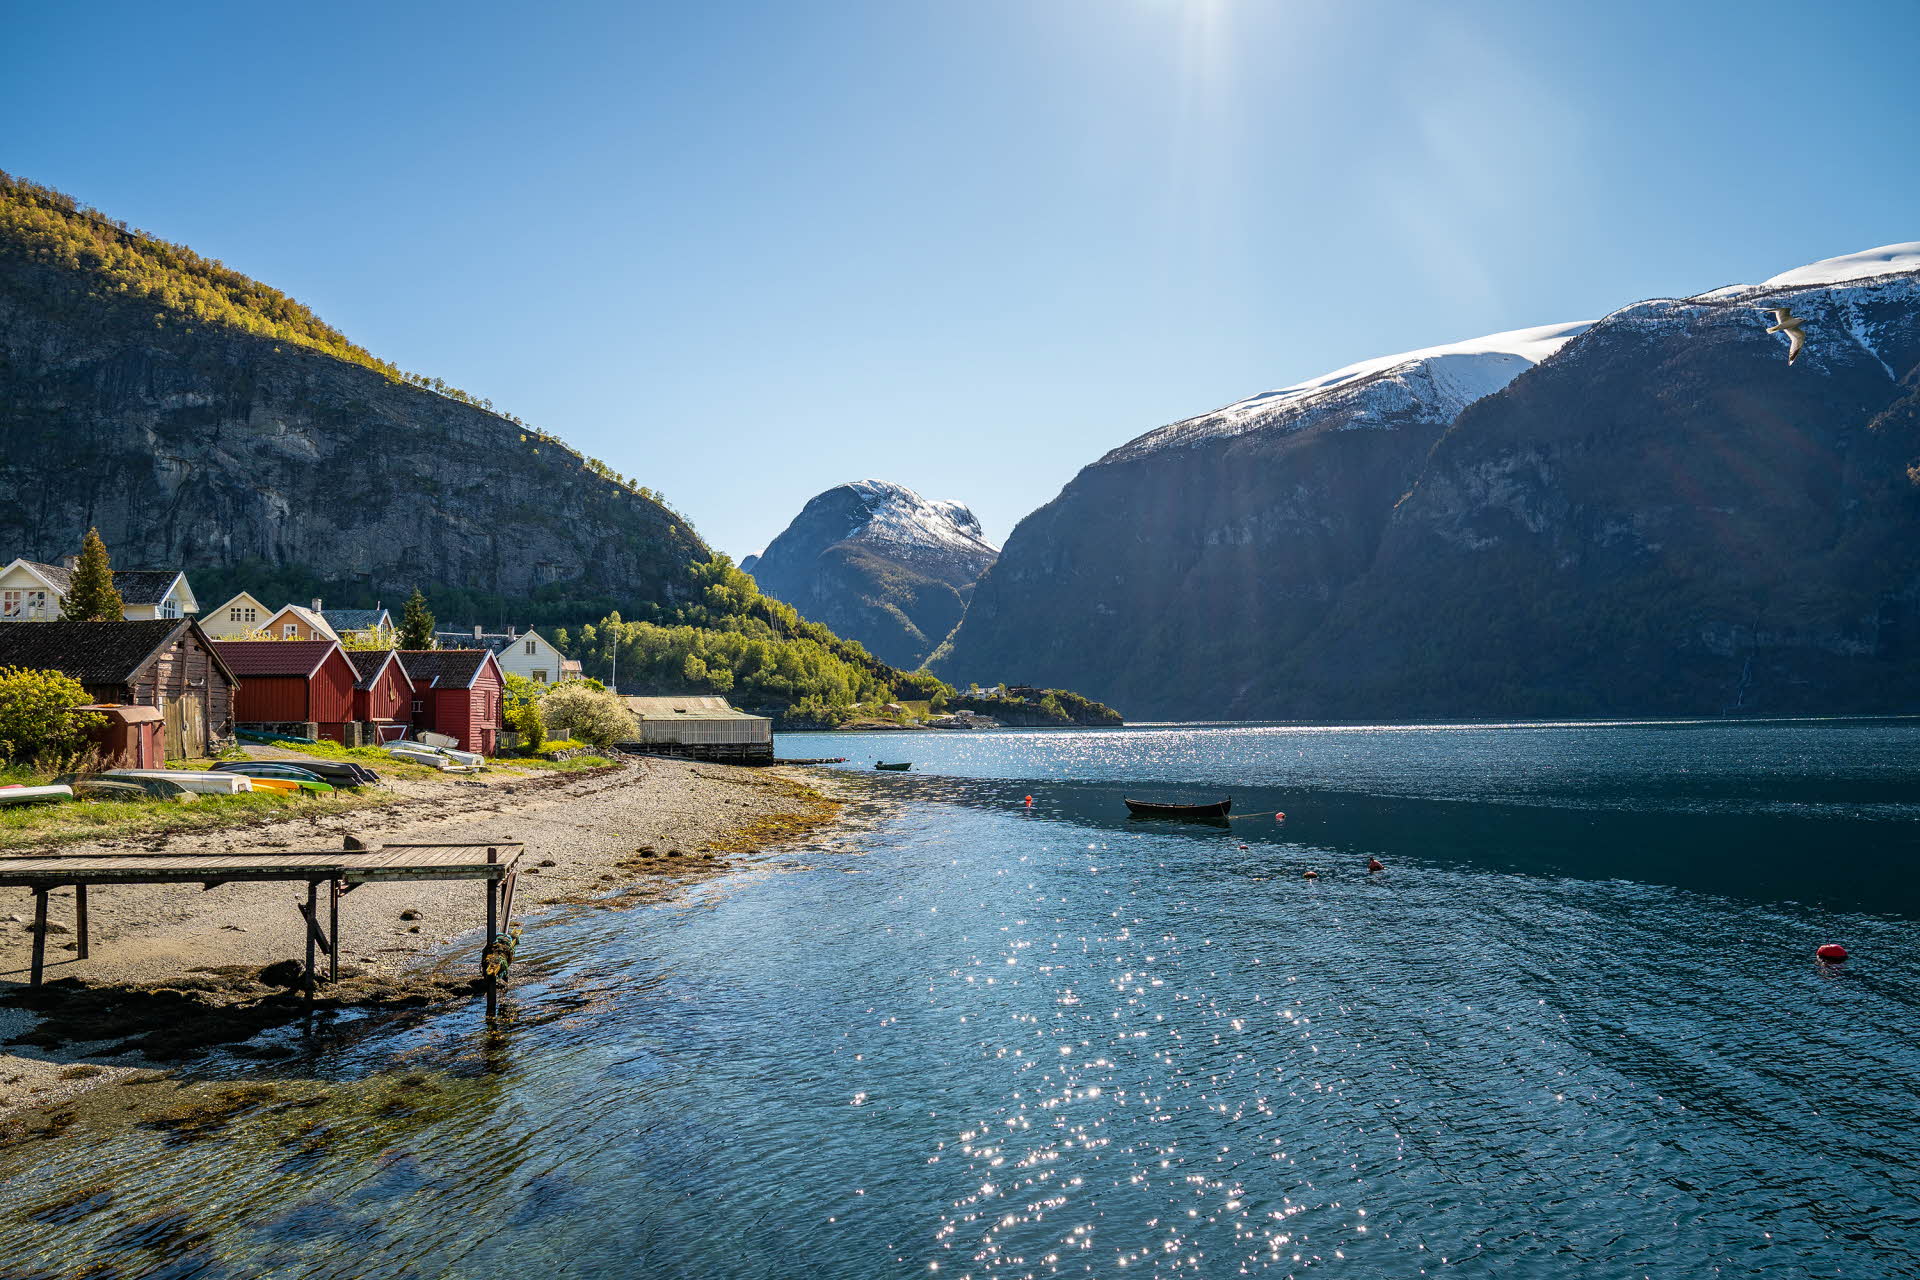 Maisons de pêcheurs sur le rivage de l’Aurlandsfjord, inscrit au patrimoine mondial de l’UNESCO, en plein été. Montagnes luxuriantes contrastant avec des sommets enneigés